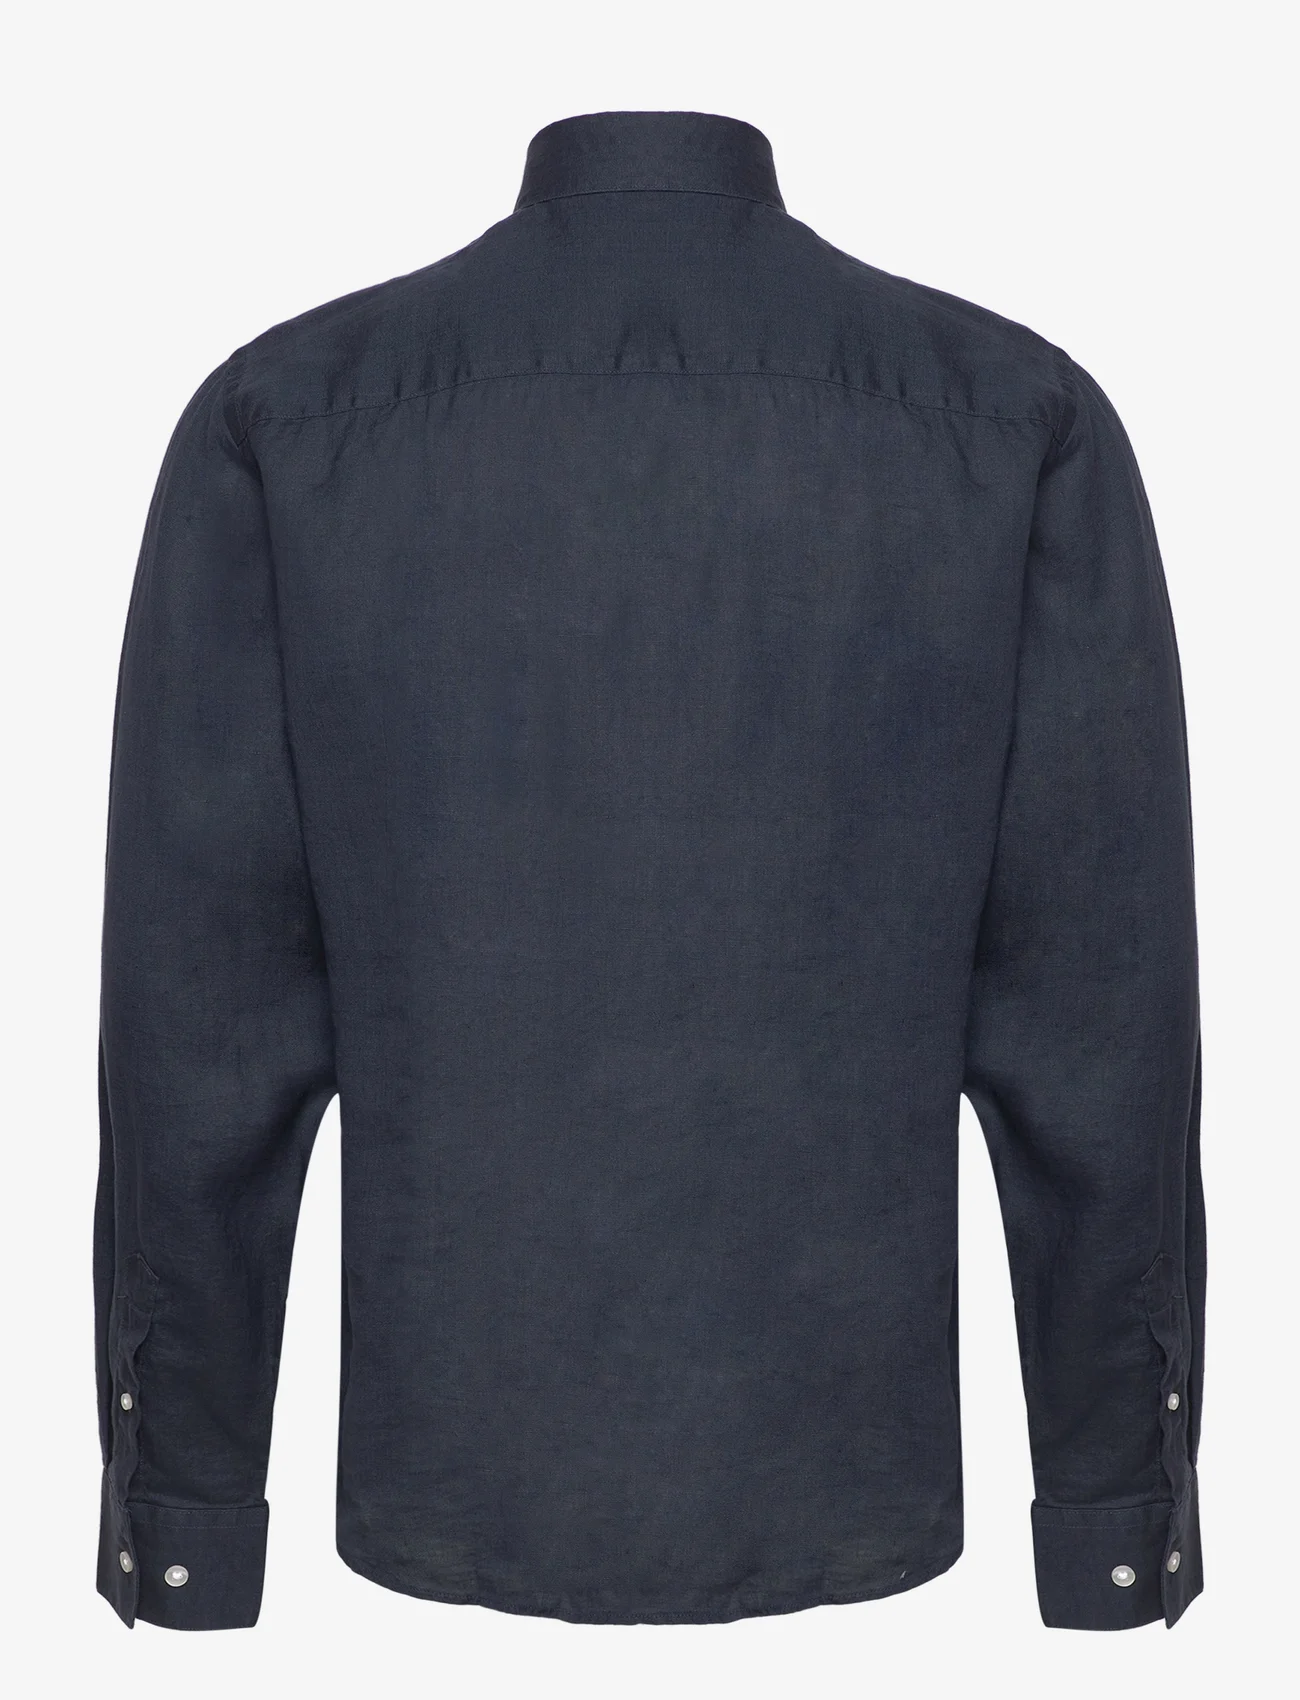 Bruun & Stengade - BS Taishi Casual Modern Fit Shirt - linnen overhemden - navy - 1